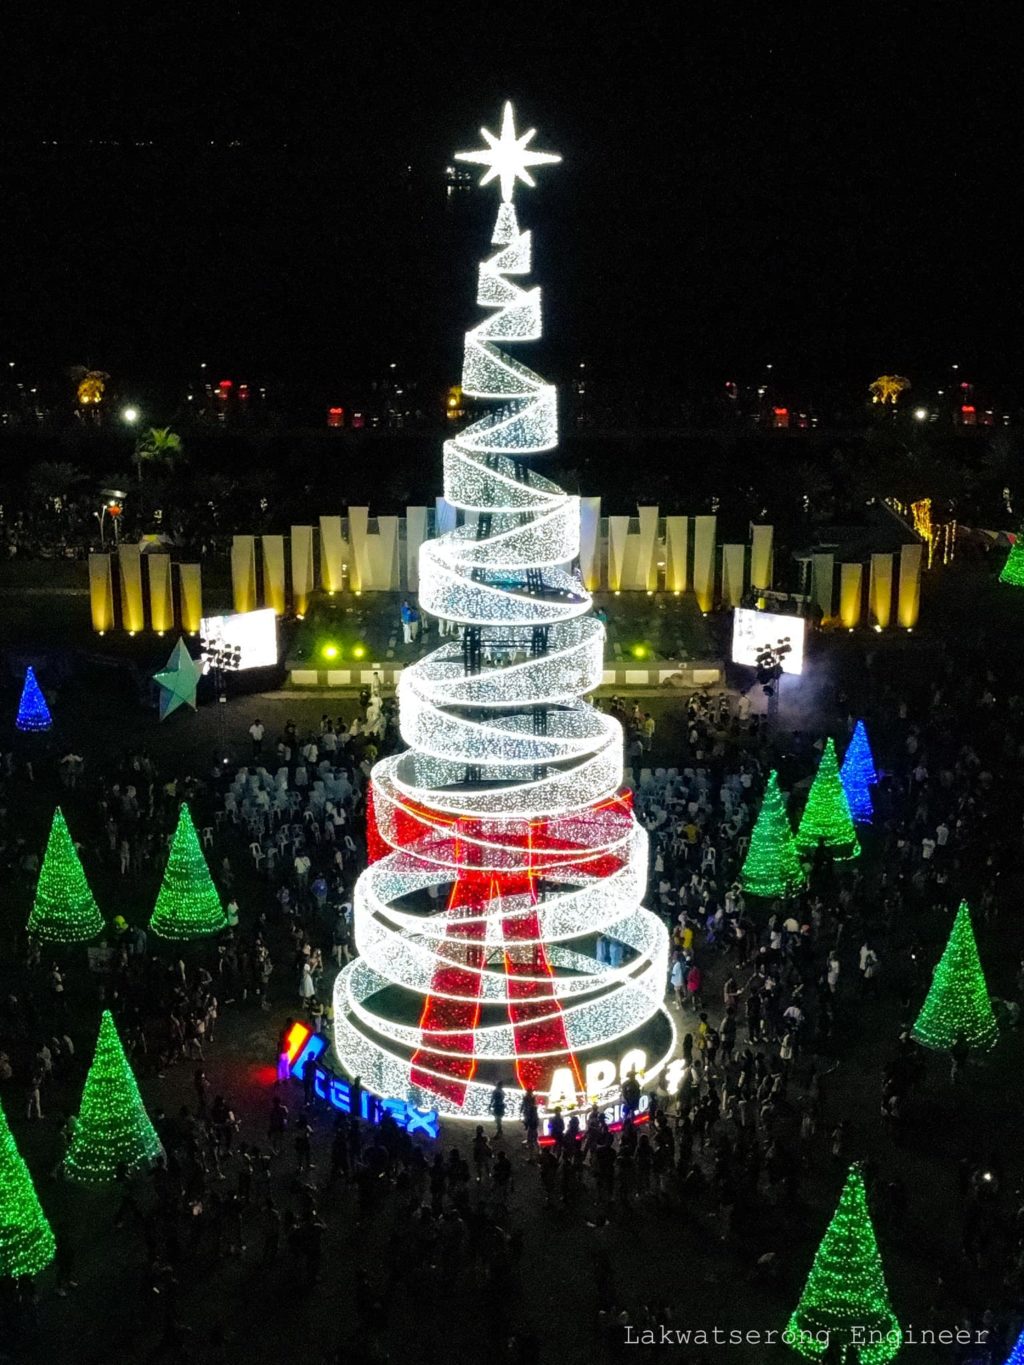 City of Naga lights up Christmas tree.